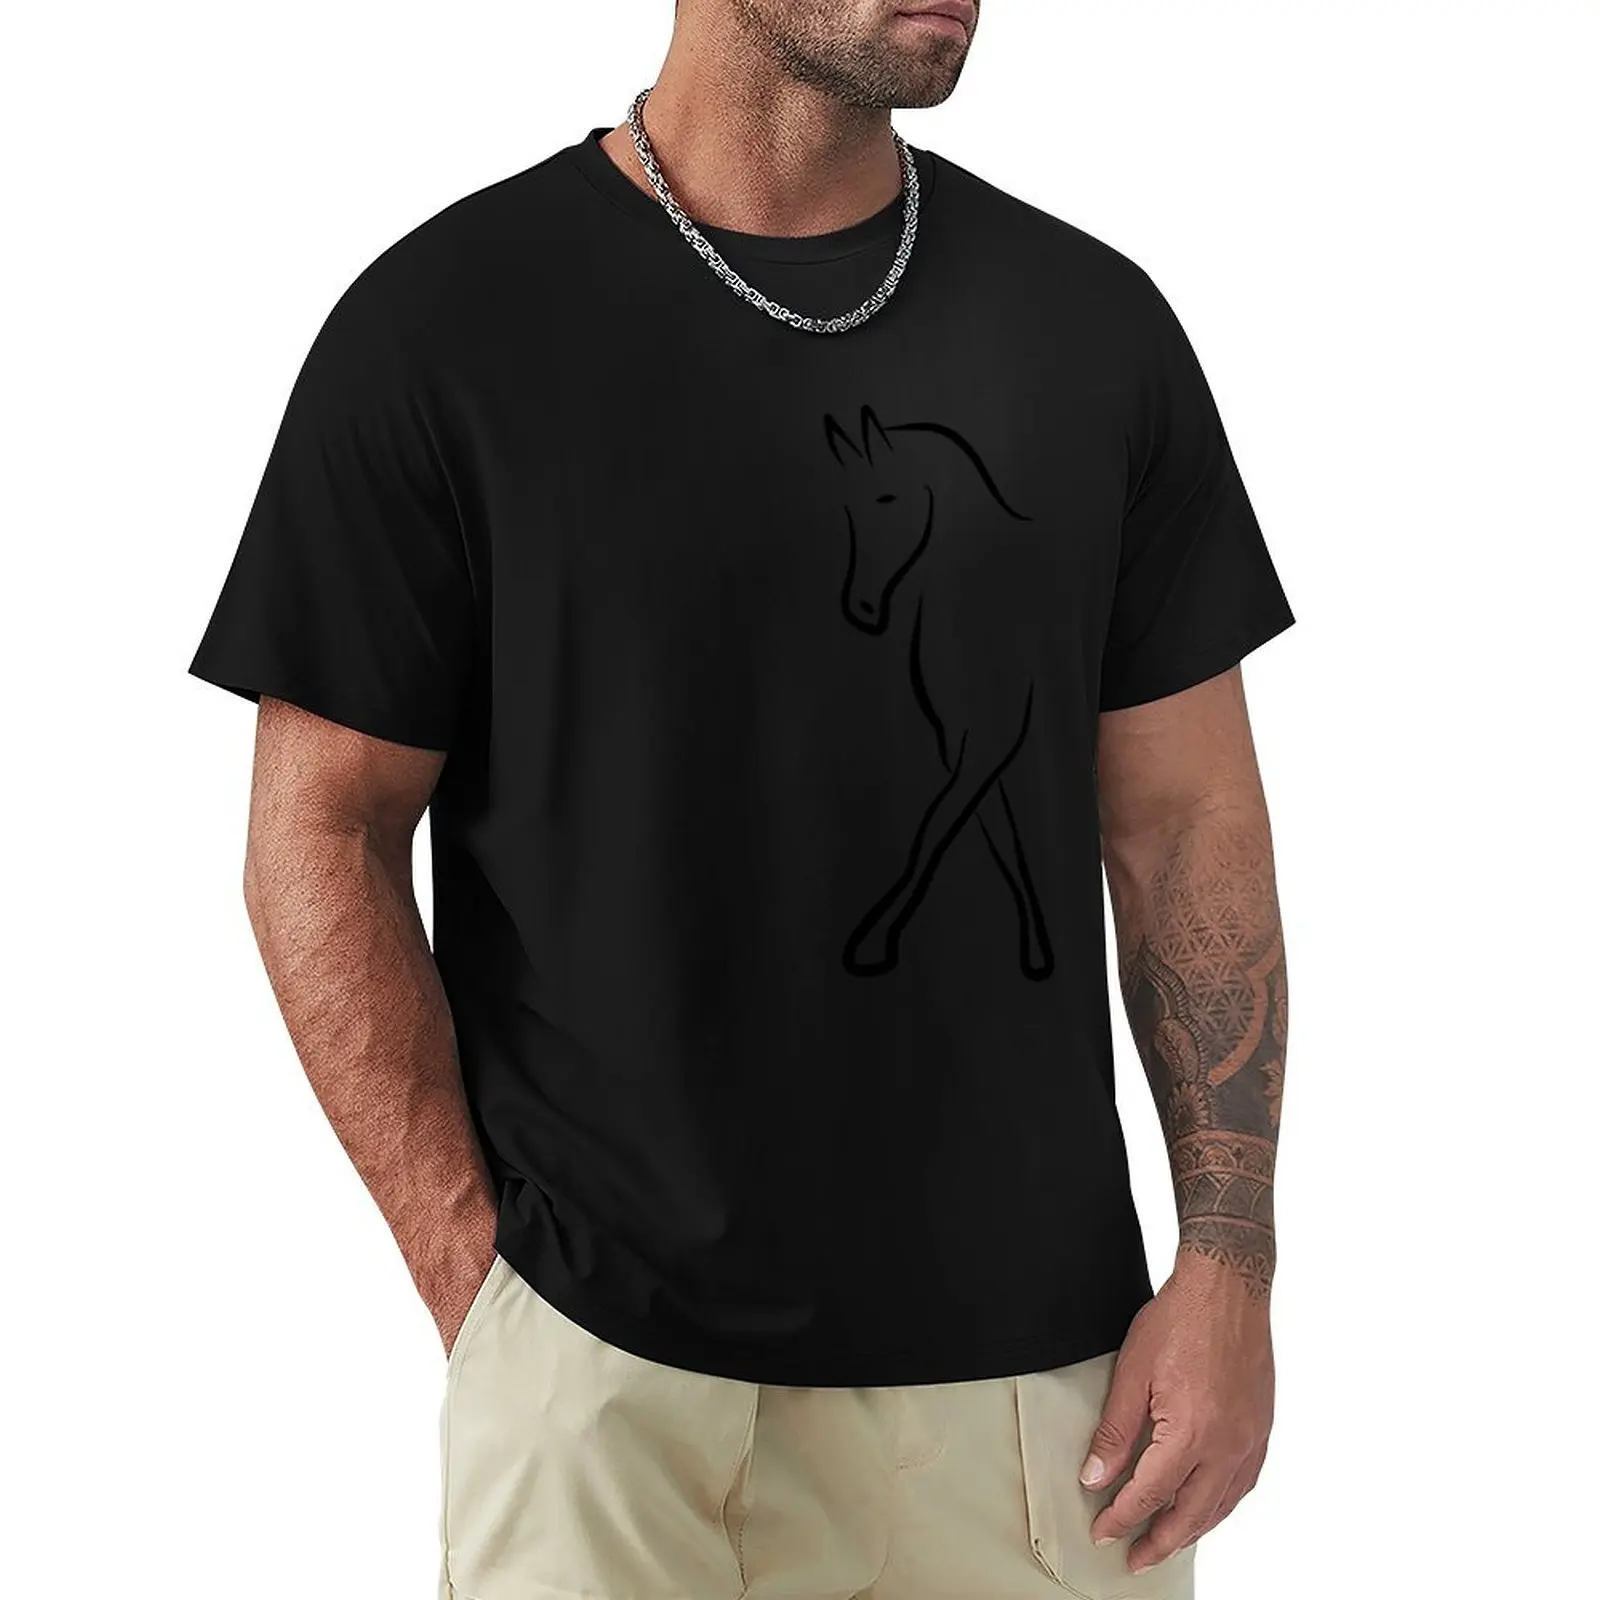 

Футболка для Выездки лошади, летний топ, мужские футболки с индивидуальным дизайном фруктов ткацкого станка